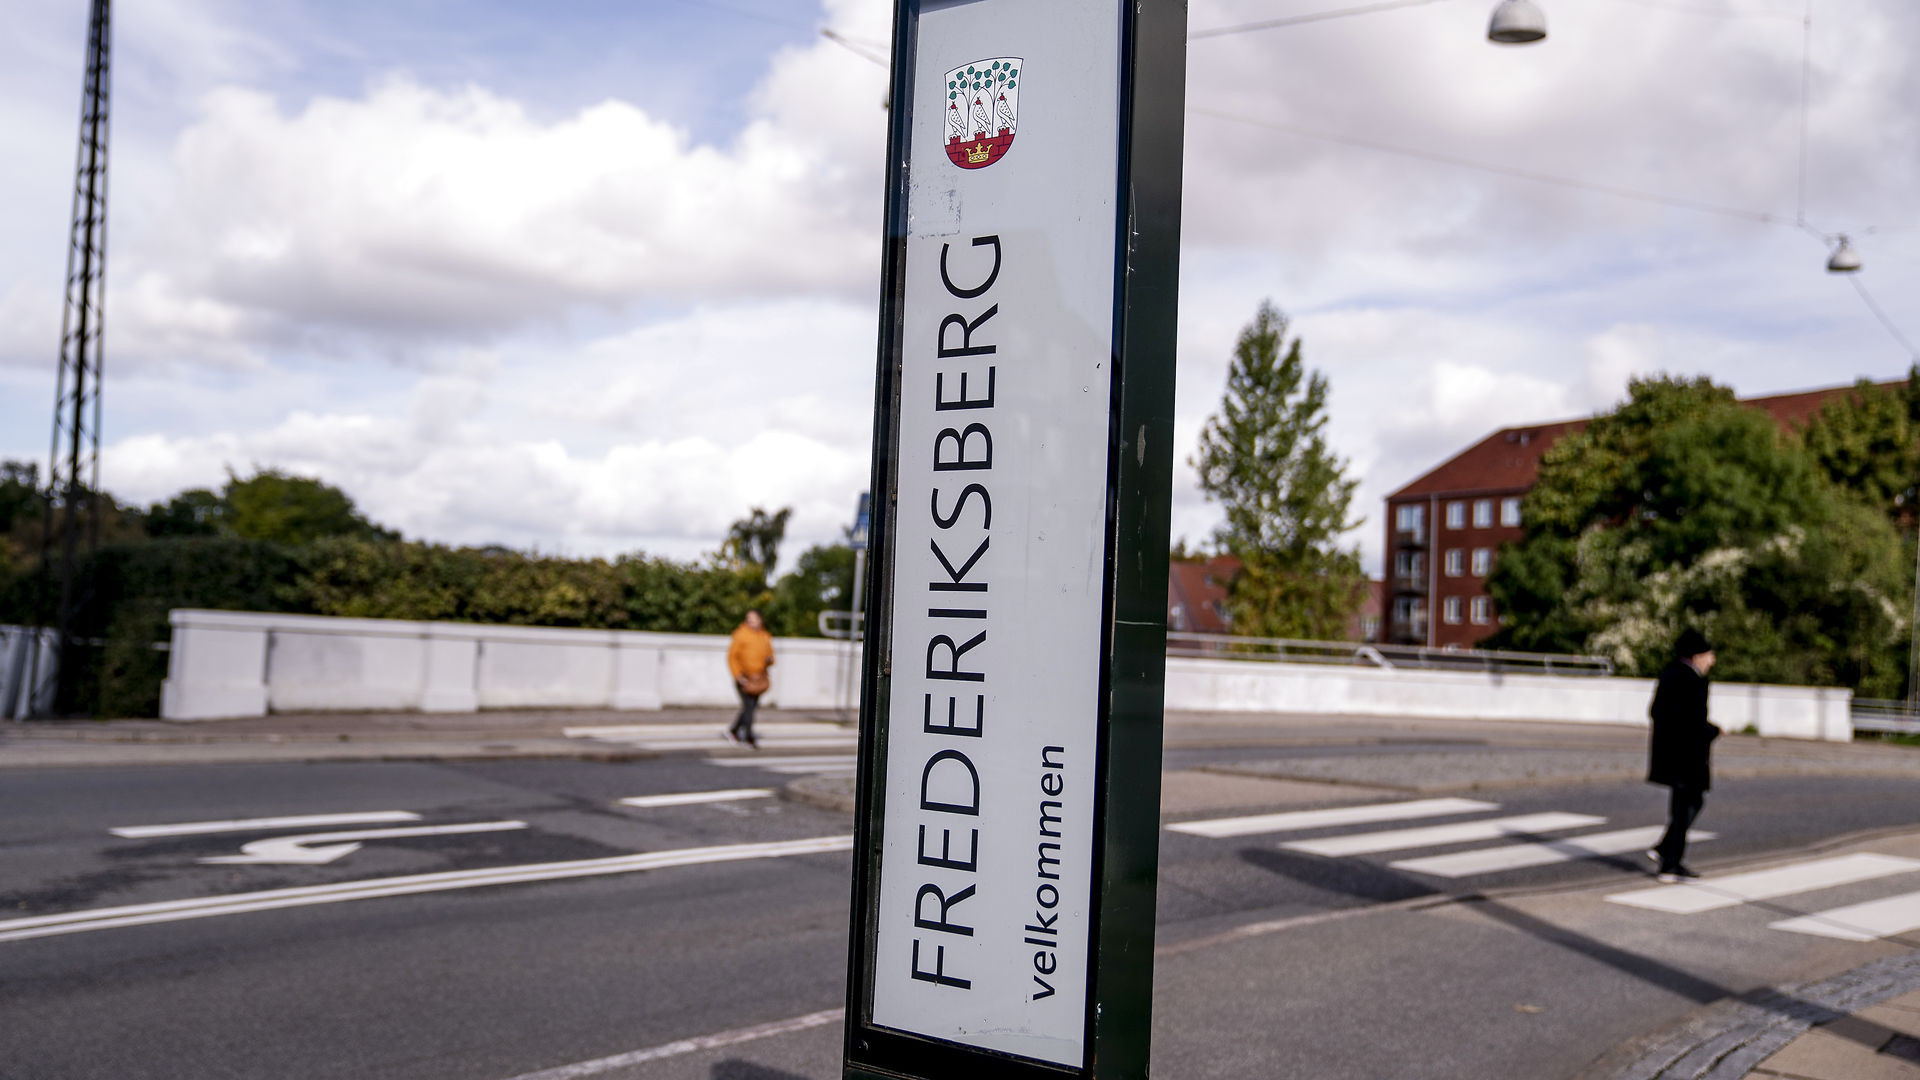 Kæmpe stor Snuble forhold Valg på Frederiksberg: Falder den konservative kronjuvel? | TV 2 Lorry